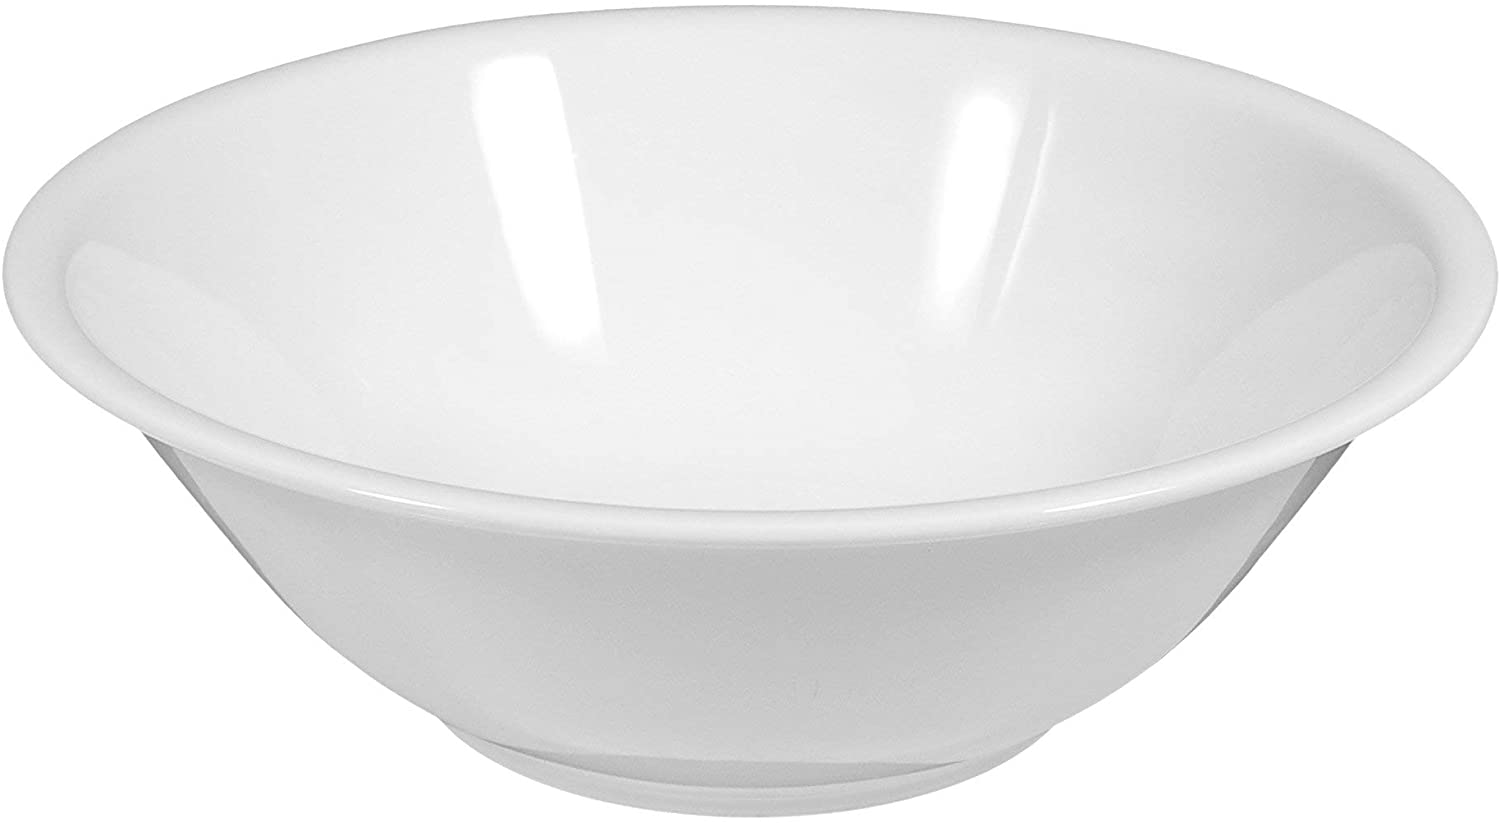 Seltmann Weiden Compact Bowl, Round, Porcelain, White, Dishwasher Safe, Ø 25 cm, 1452771